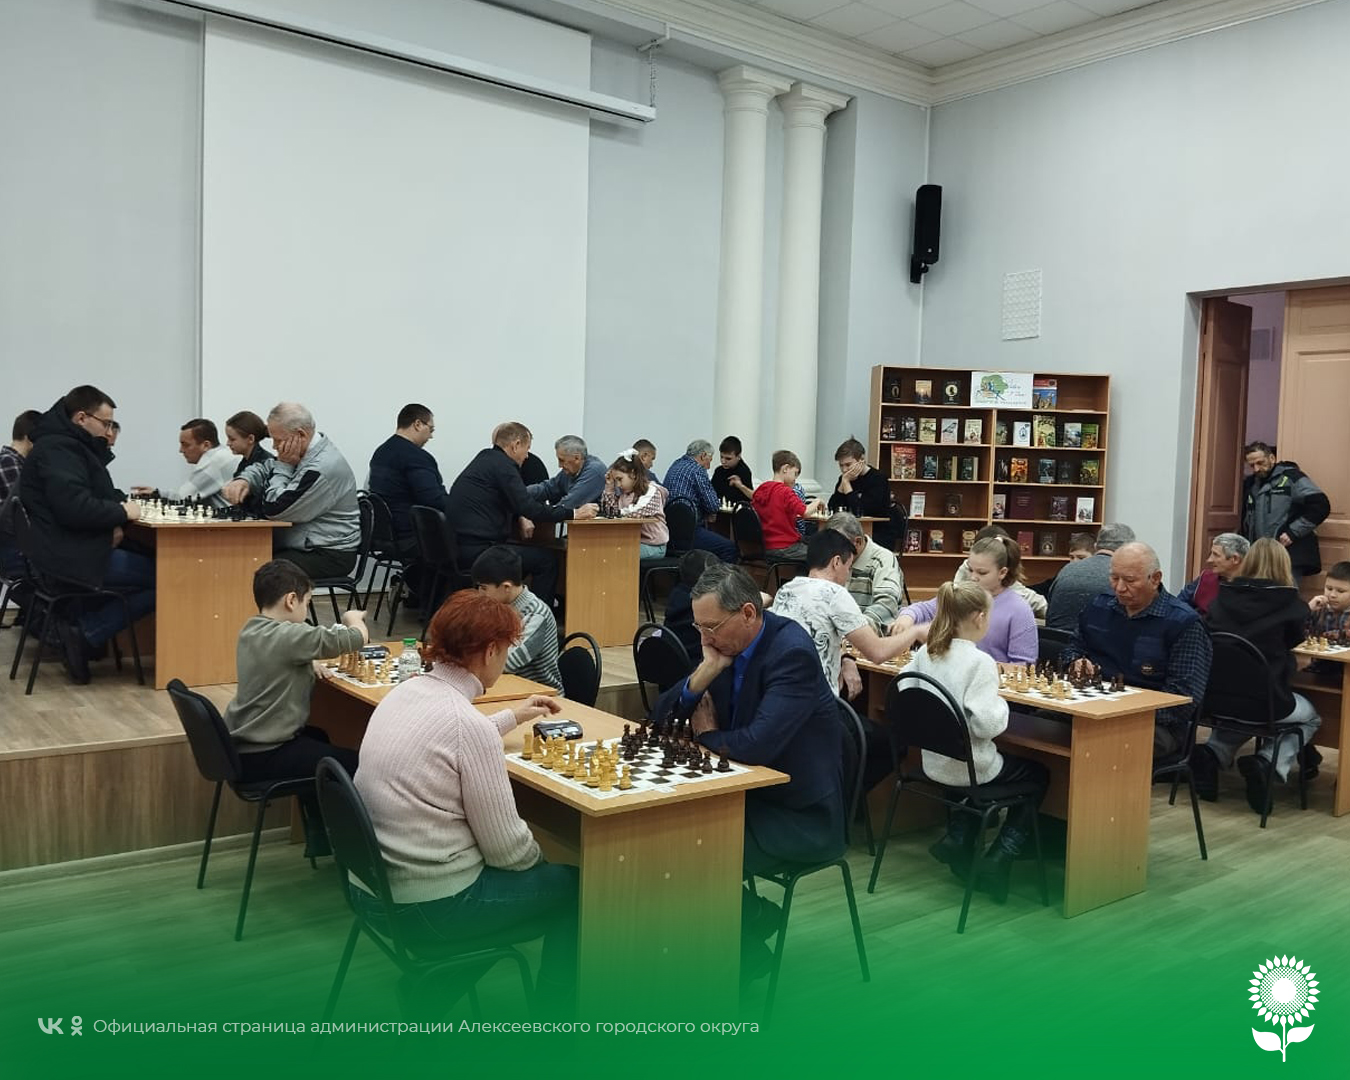 Алексеевский шахматисты приняли участие в традиционном  турнире по быстрым шахматам, который был посвящен Дню освобождения Красногвардейского района от немецко-фашистских захватчиков.